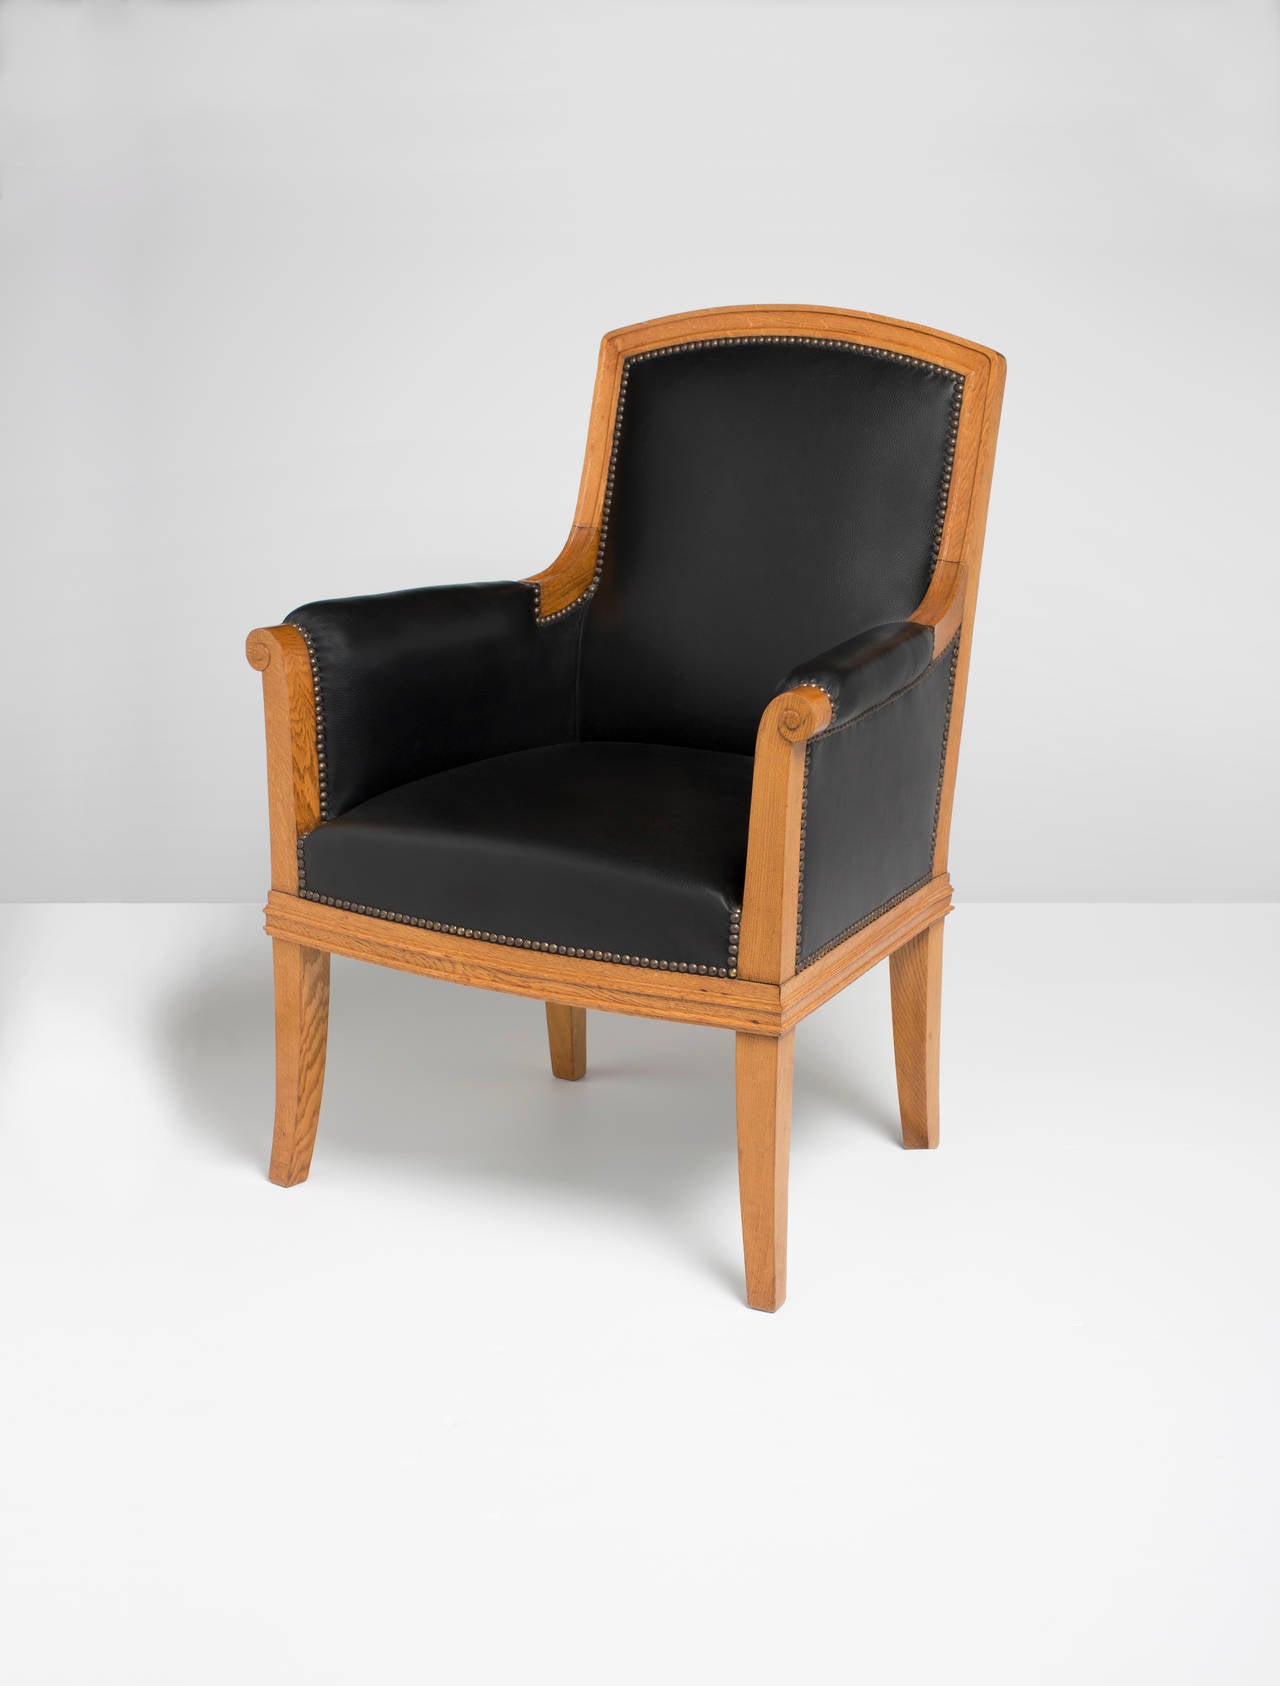 Paire de fauteuils en chêne de Louis Sue recouverts de cuir

Provenance : Bureaux de la banque Lazare Frères à Paris.